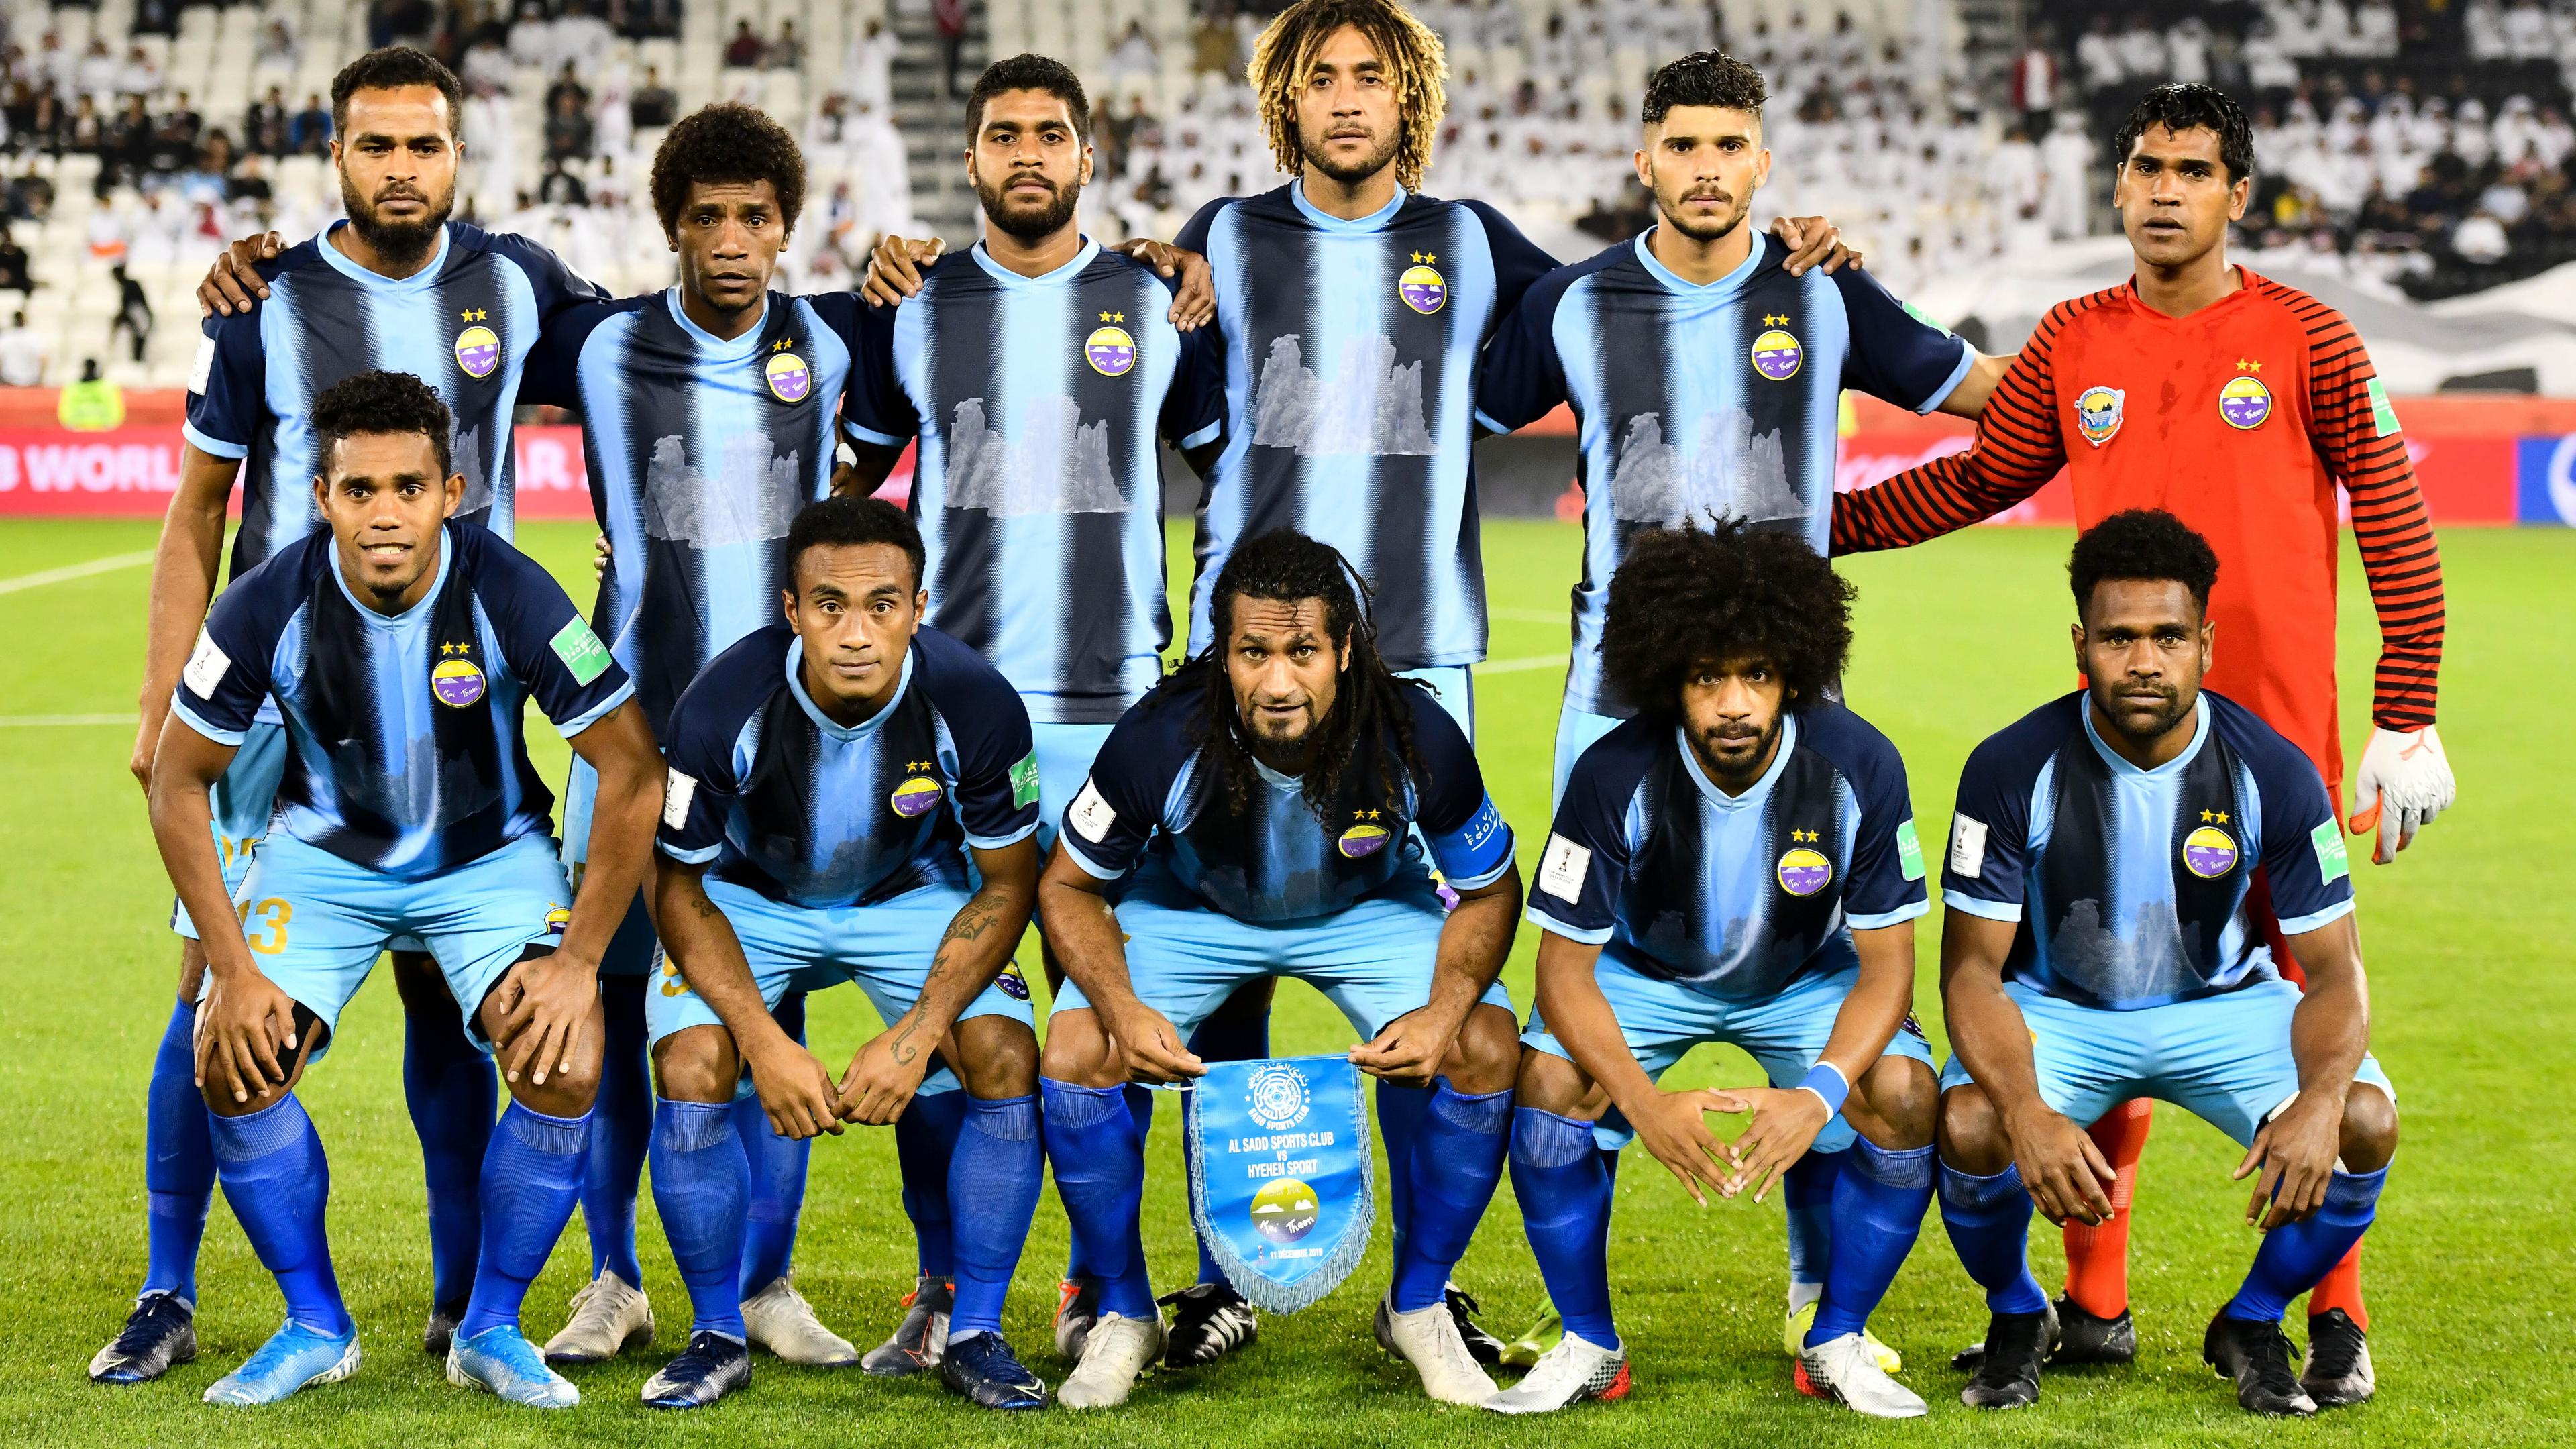 Spieler des neukaledonischen Klubs Hienghene stellen sich bei der Klub-WM 2019 vor dem Spiel gegen Al-Sadd SC zum Mannschaftsfoto.